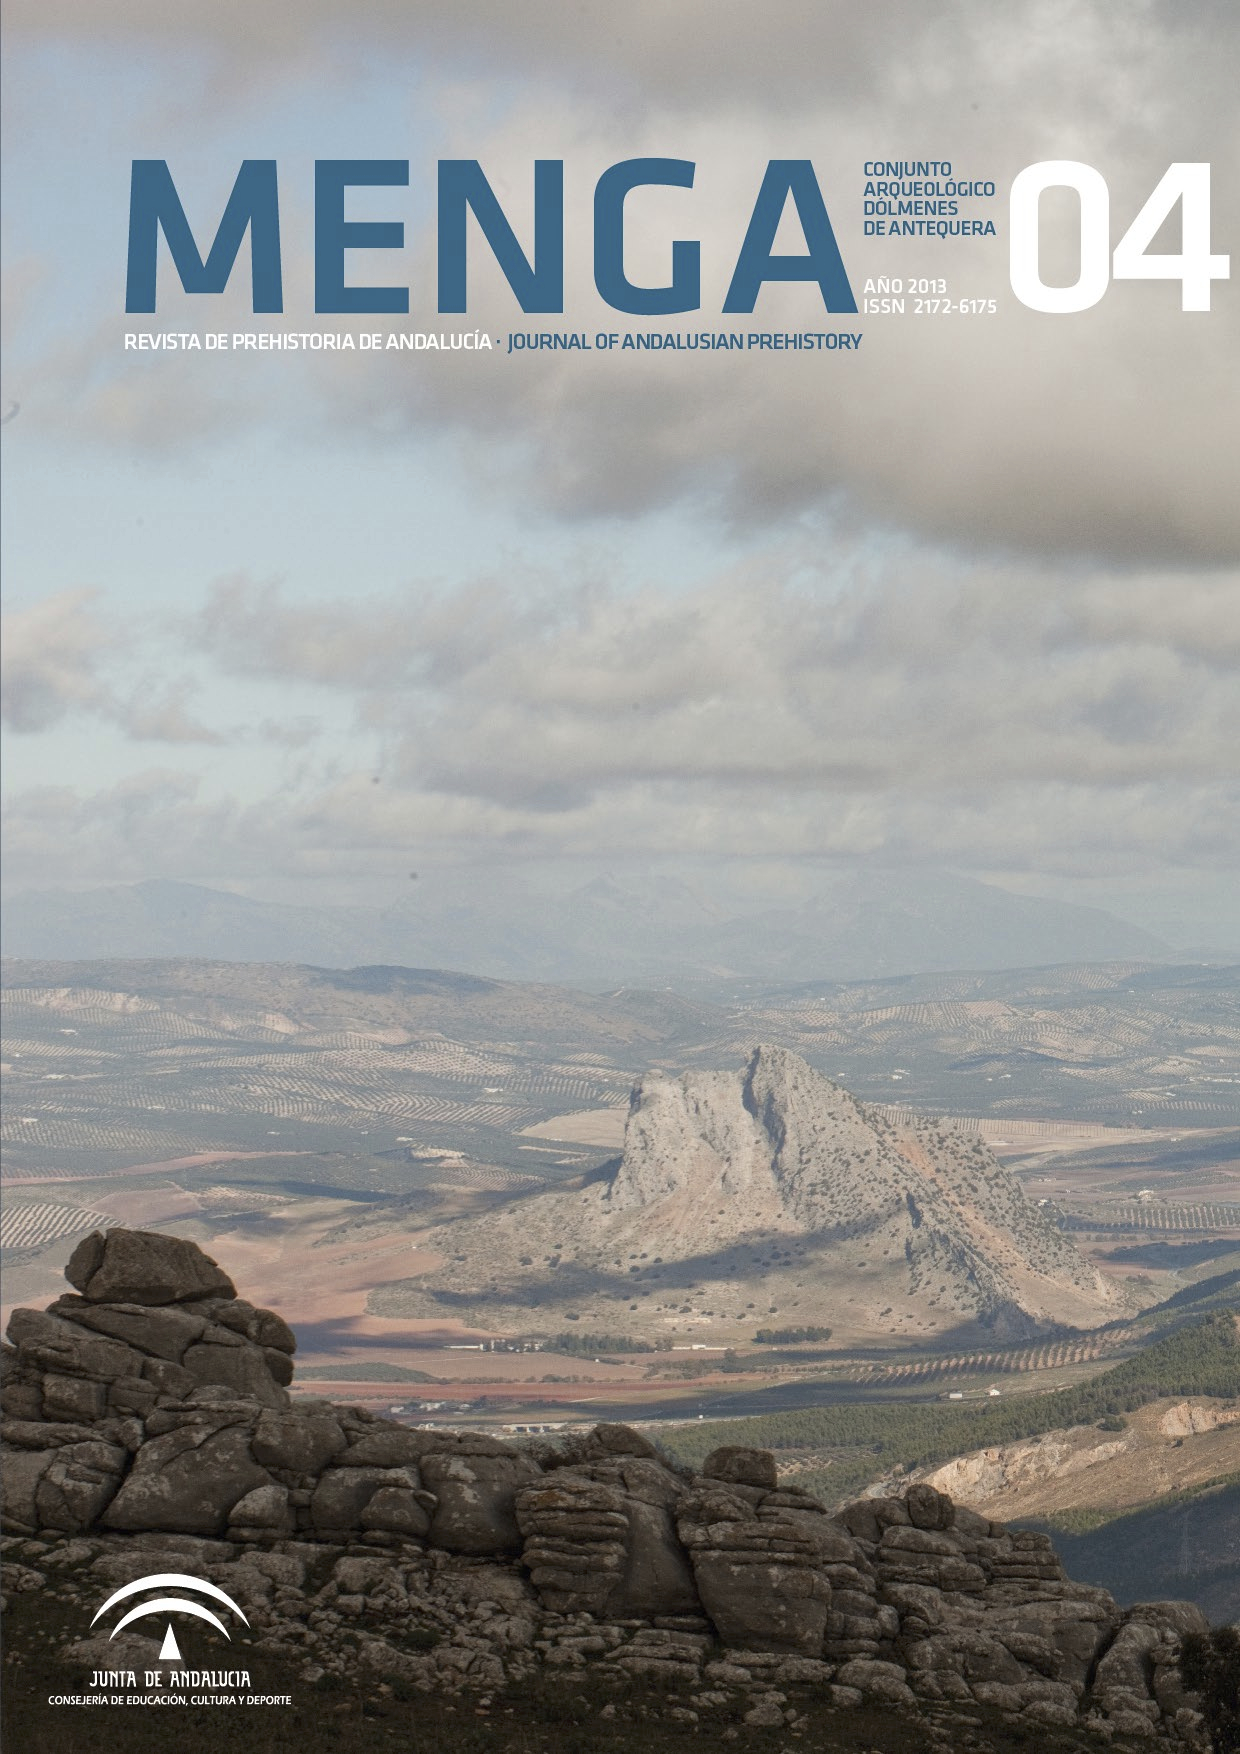 Portada de Menga04. Revista de Prehistoria de Andalucía. Ilustra la sección de Publicaciones